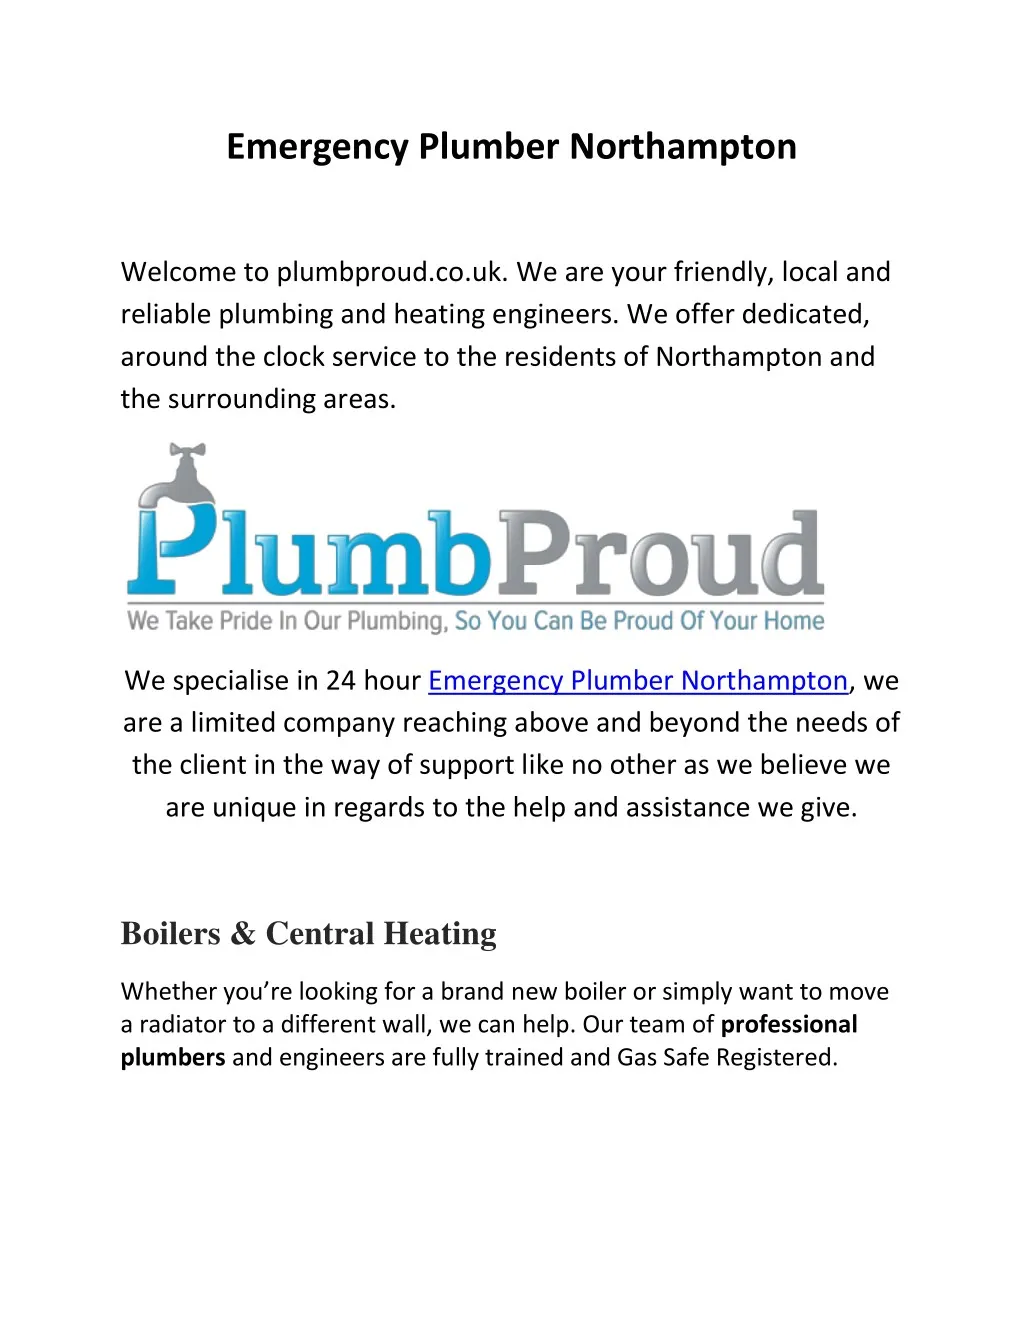 emergency plumber northampton n.